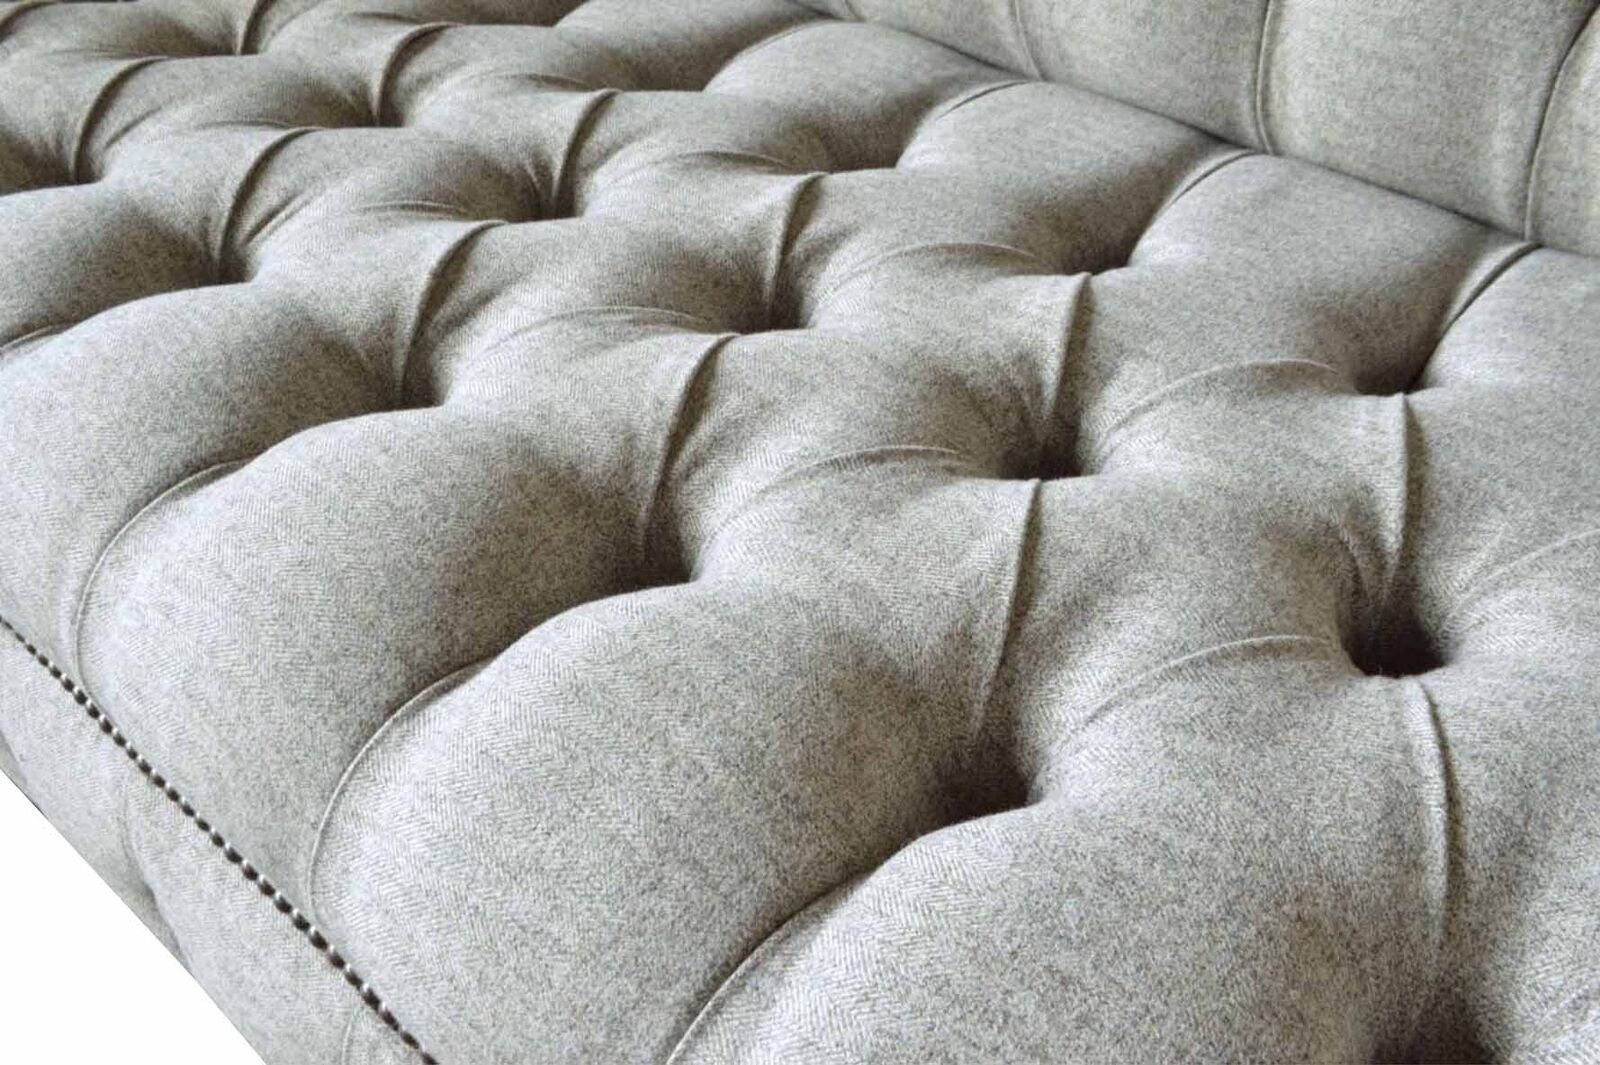 Grau Design Sofa Made Möbel JVmoebel Dreisitzer Sofas Sofa In Couchen Sitzer Polster 3 Europe Neu,